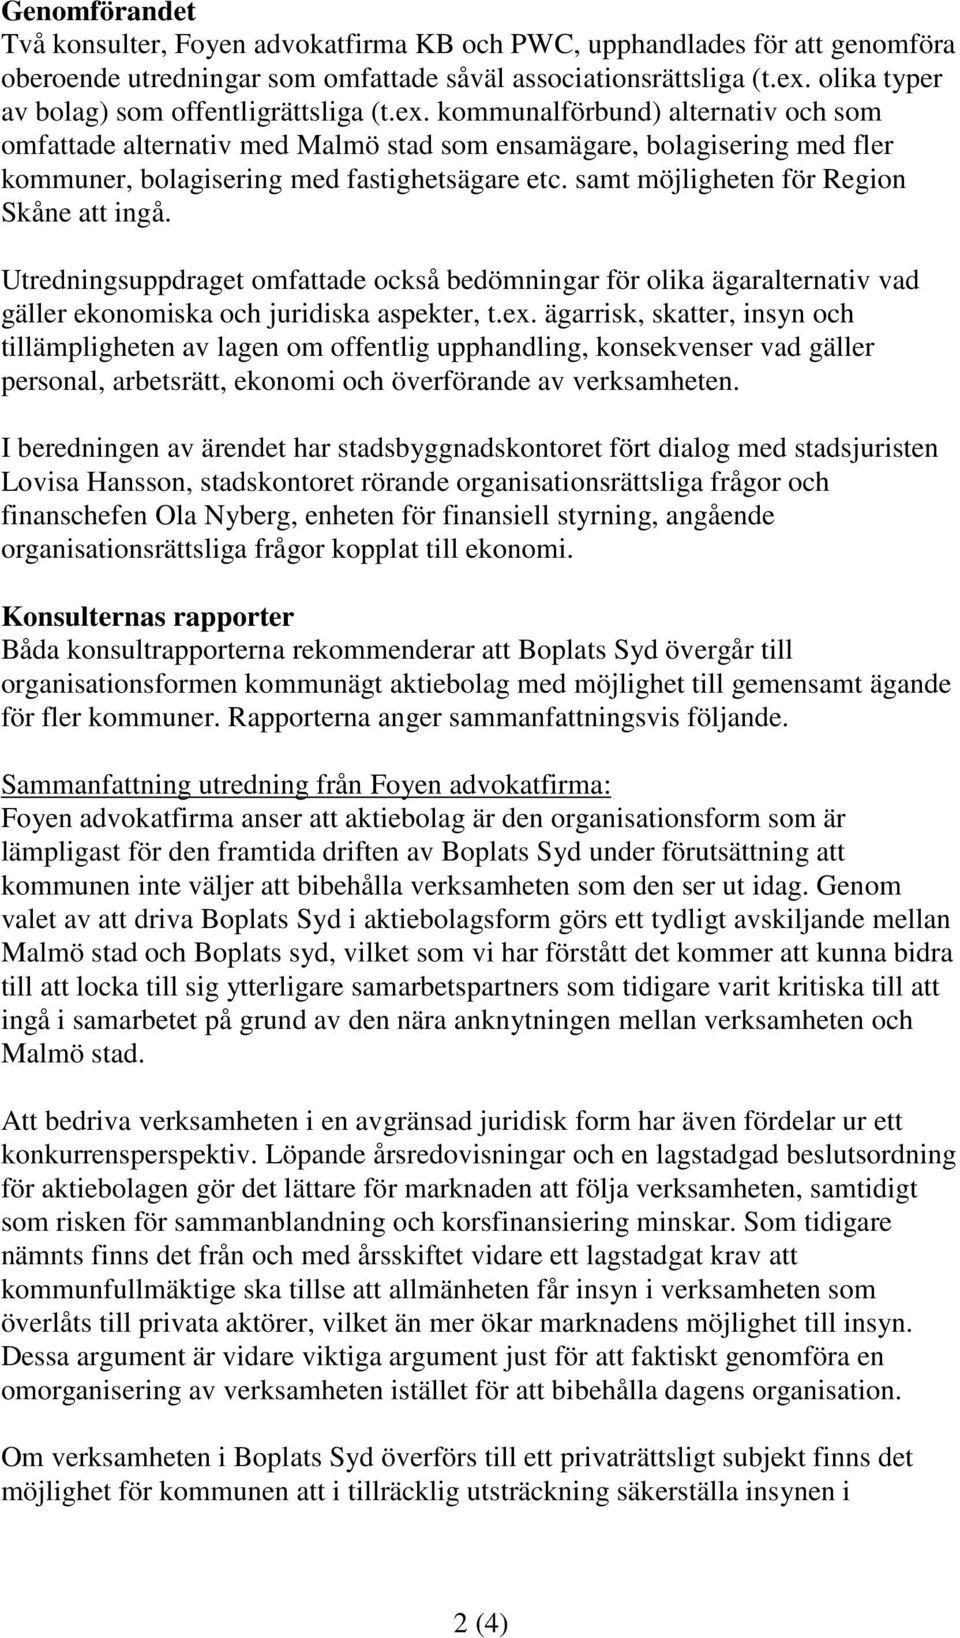 kommunalförbund) alternativ och som omfattade alternativ med Malmö stad som ensamägare, bolagisering med fler kommuner, bolagisering med fastighetsägare etc.